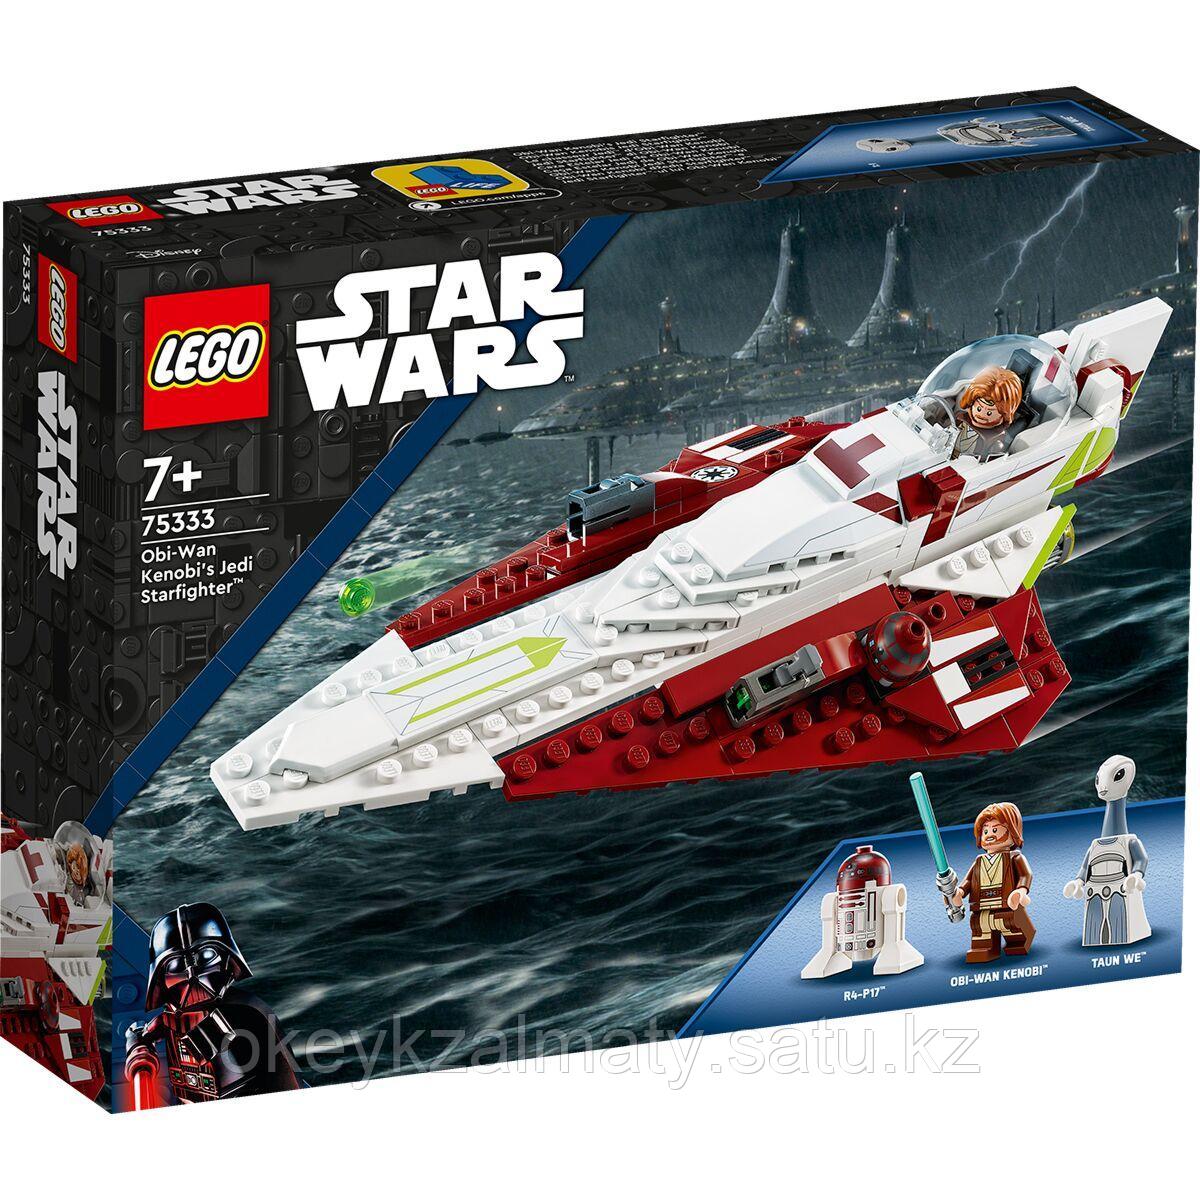 LEGO: Истребитель-джедай Оби-Вана Кеноби Star Wars 75333